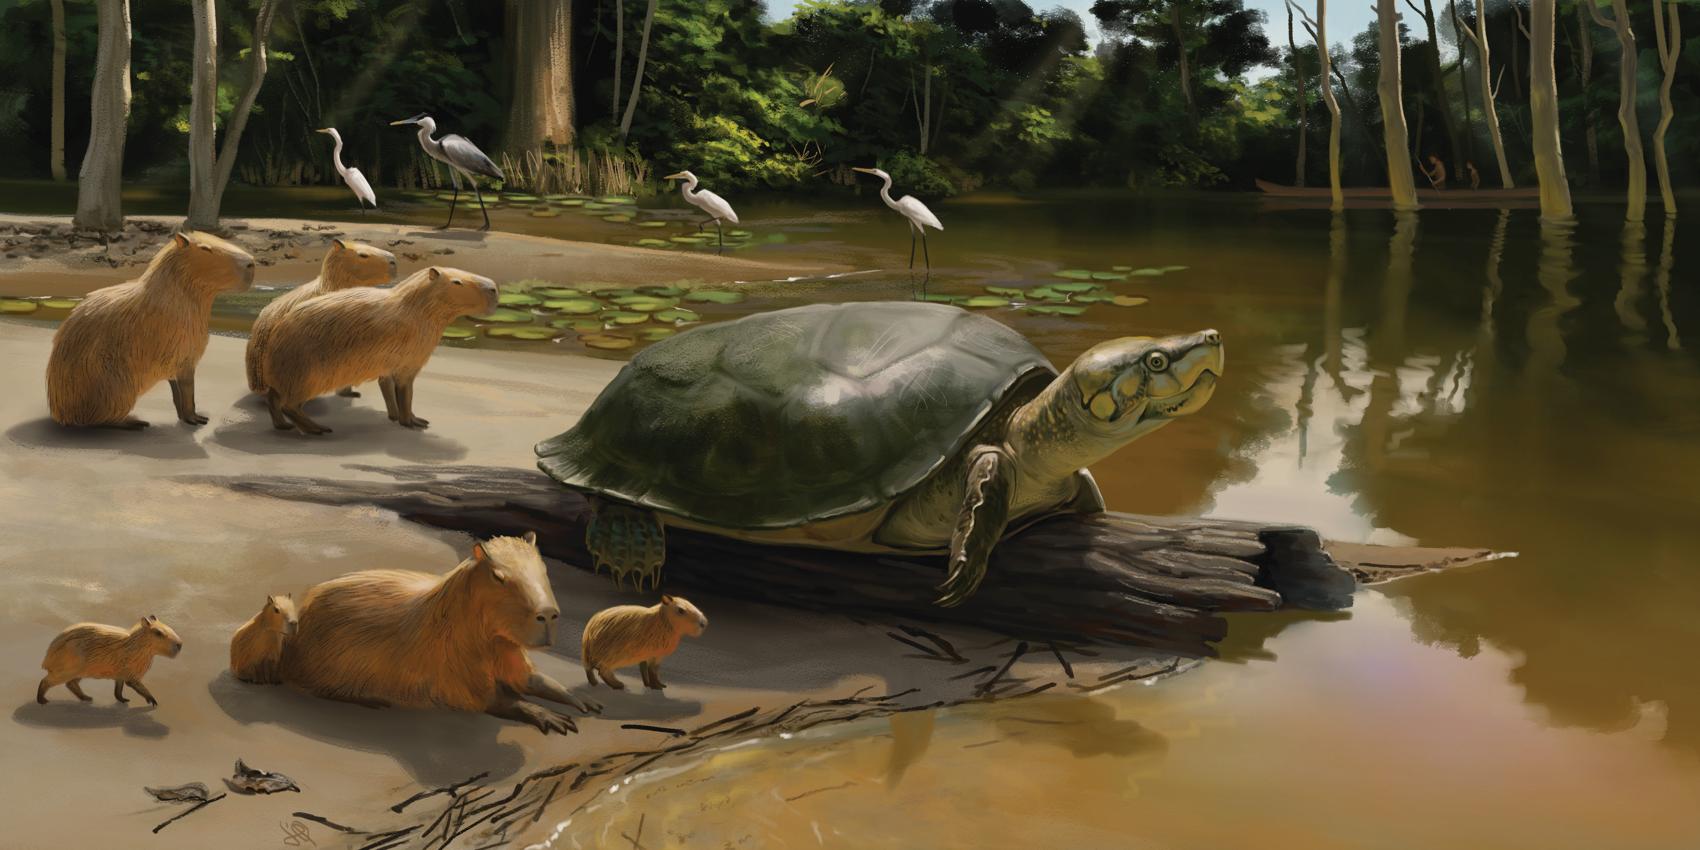 Schildkröte am Ufer einer Gewässers mit Reihern und Wasserschweinen